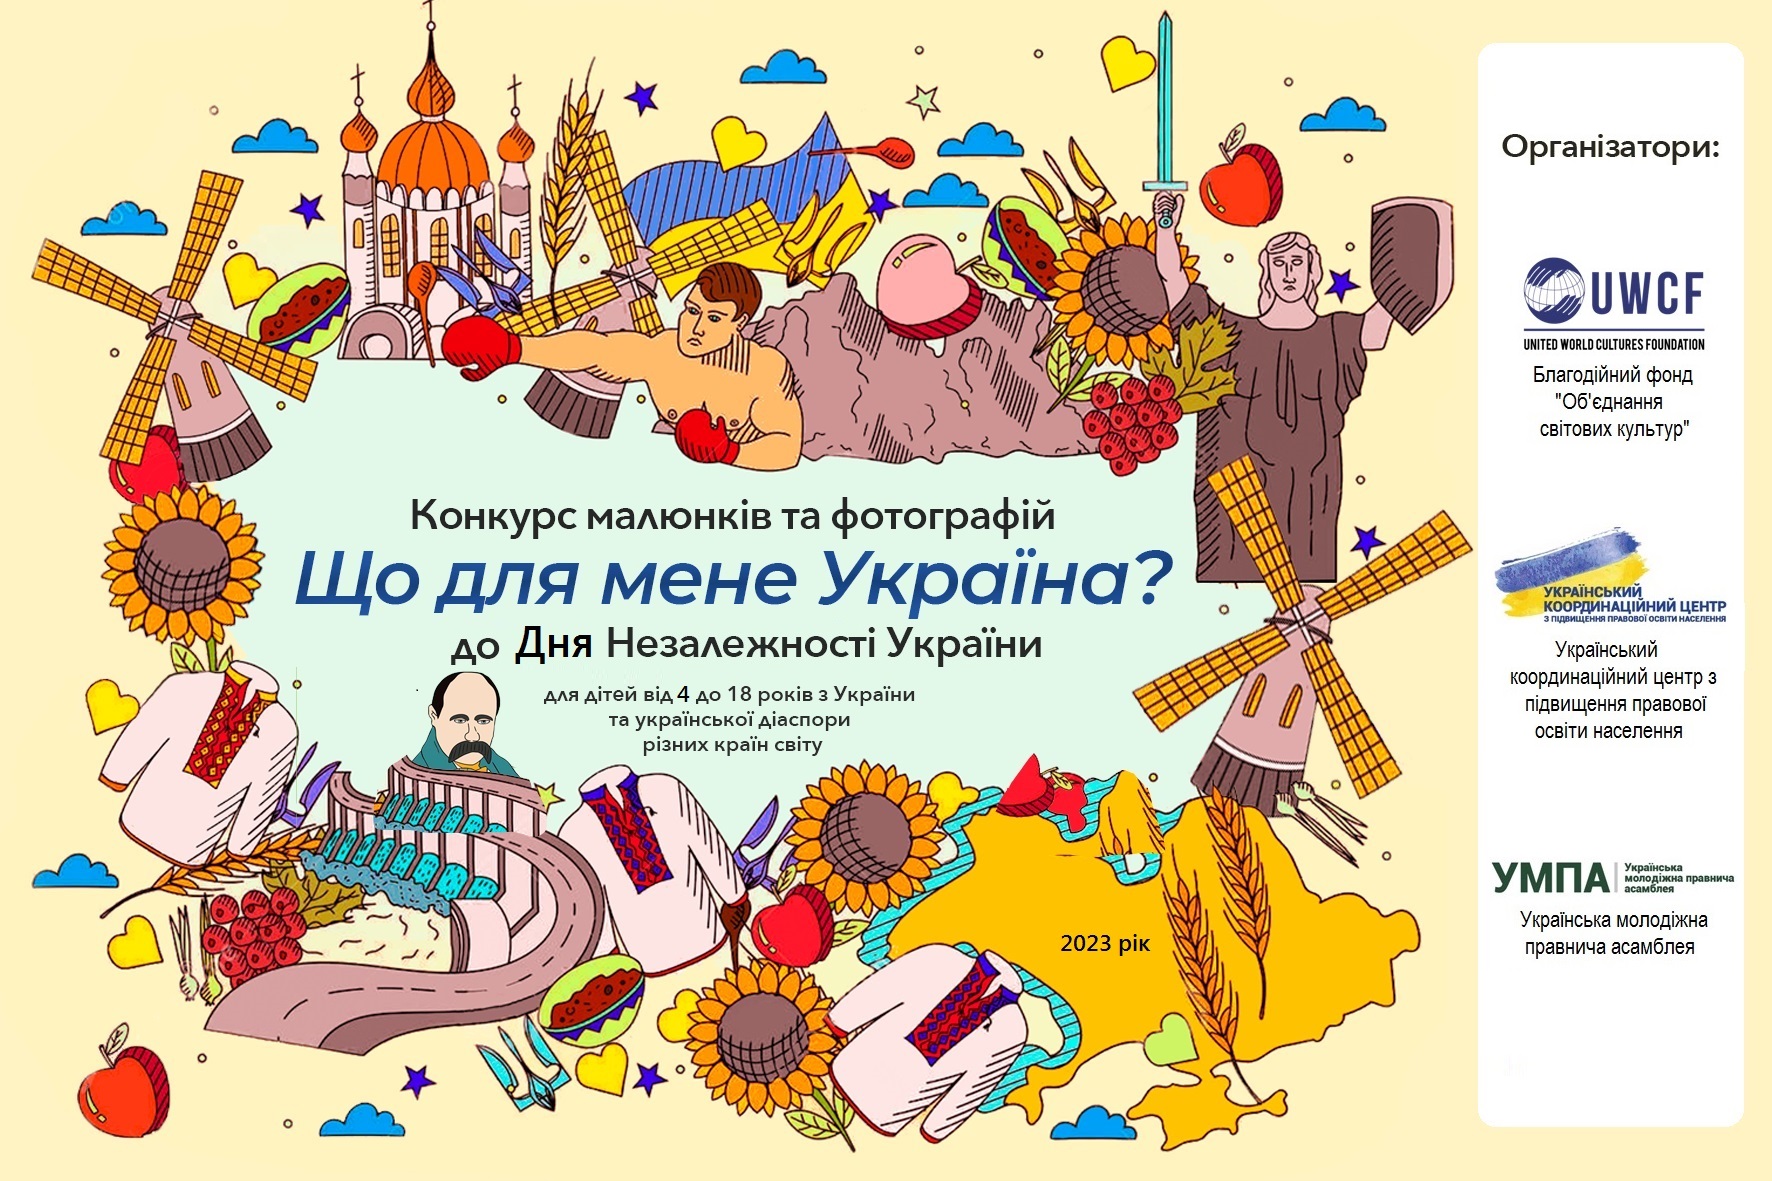 Стартував Всеукраїнський конкурс малюнків та фотографій “Що для мене Україна?” до Дня Незалежності України